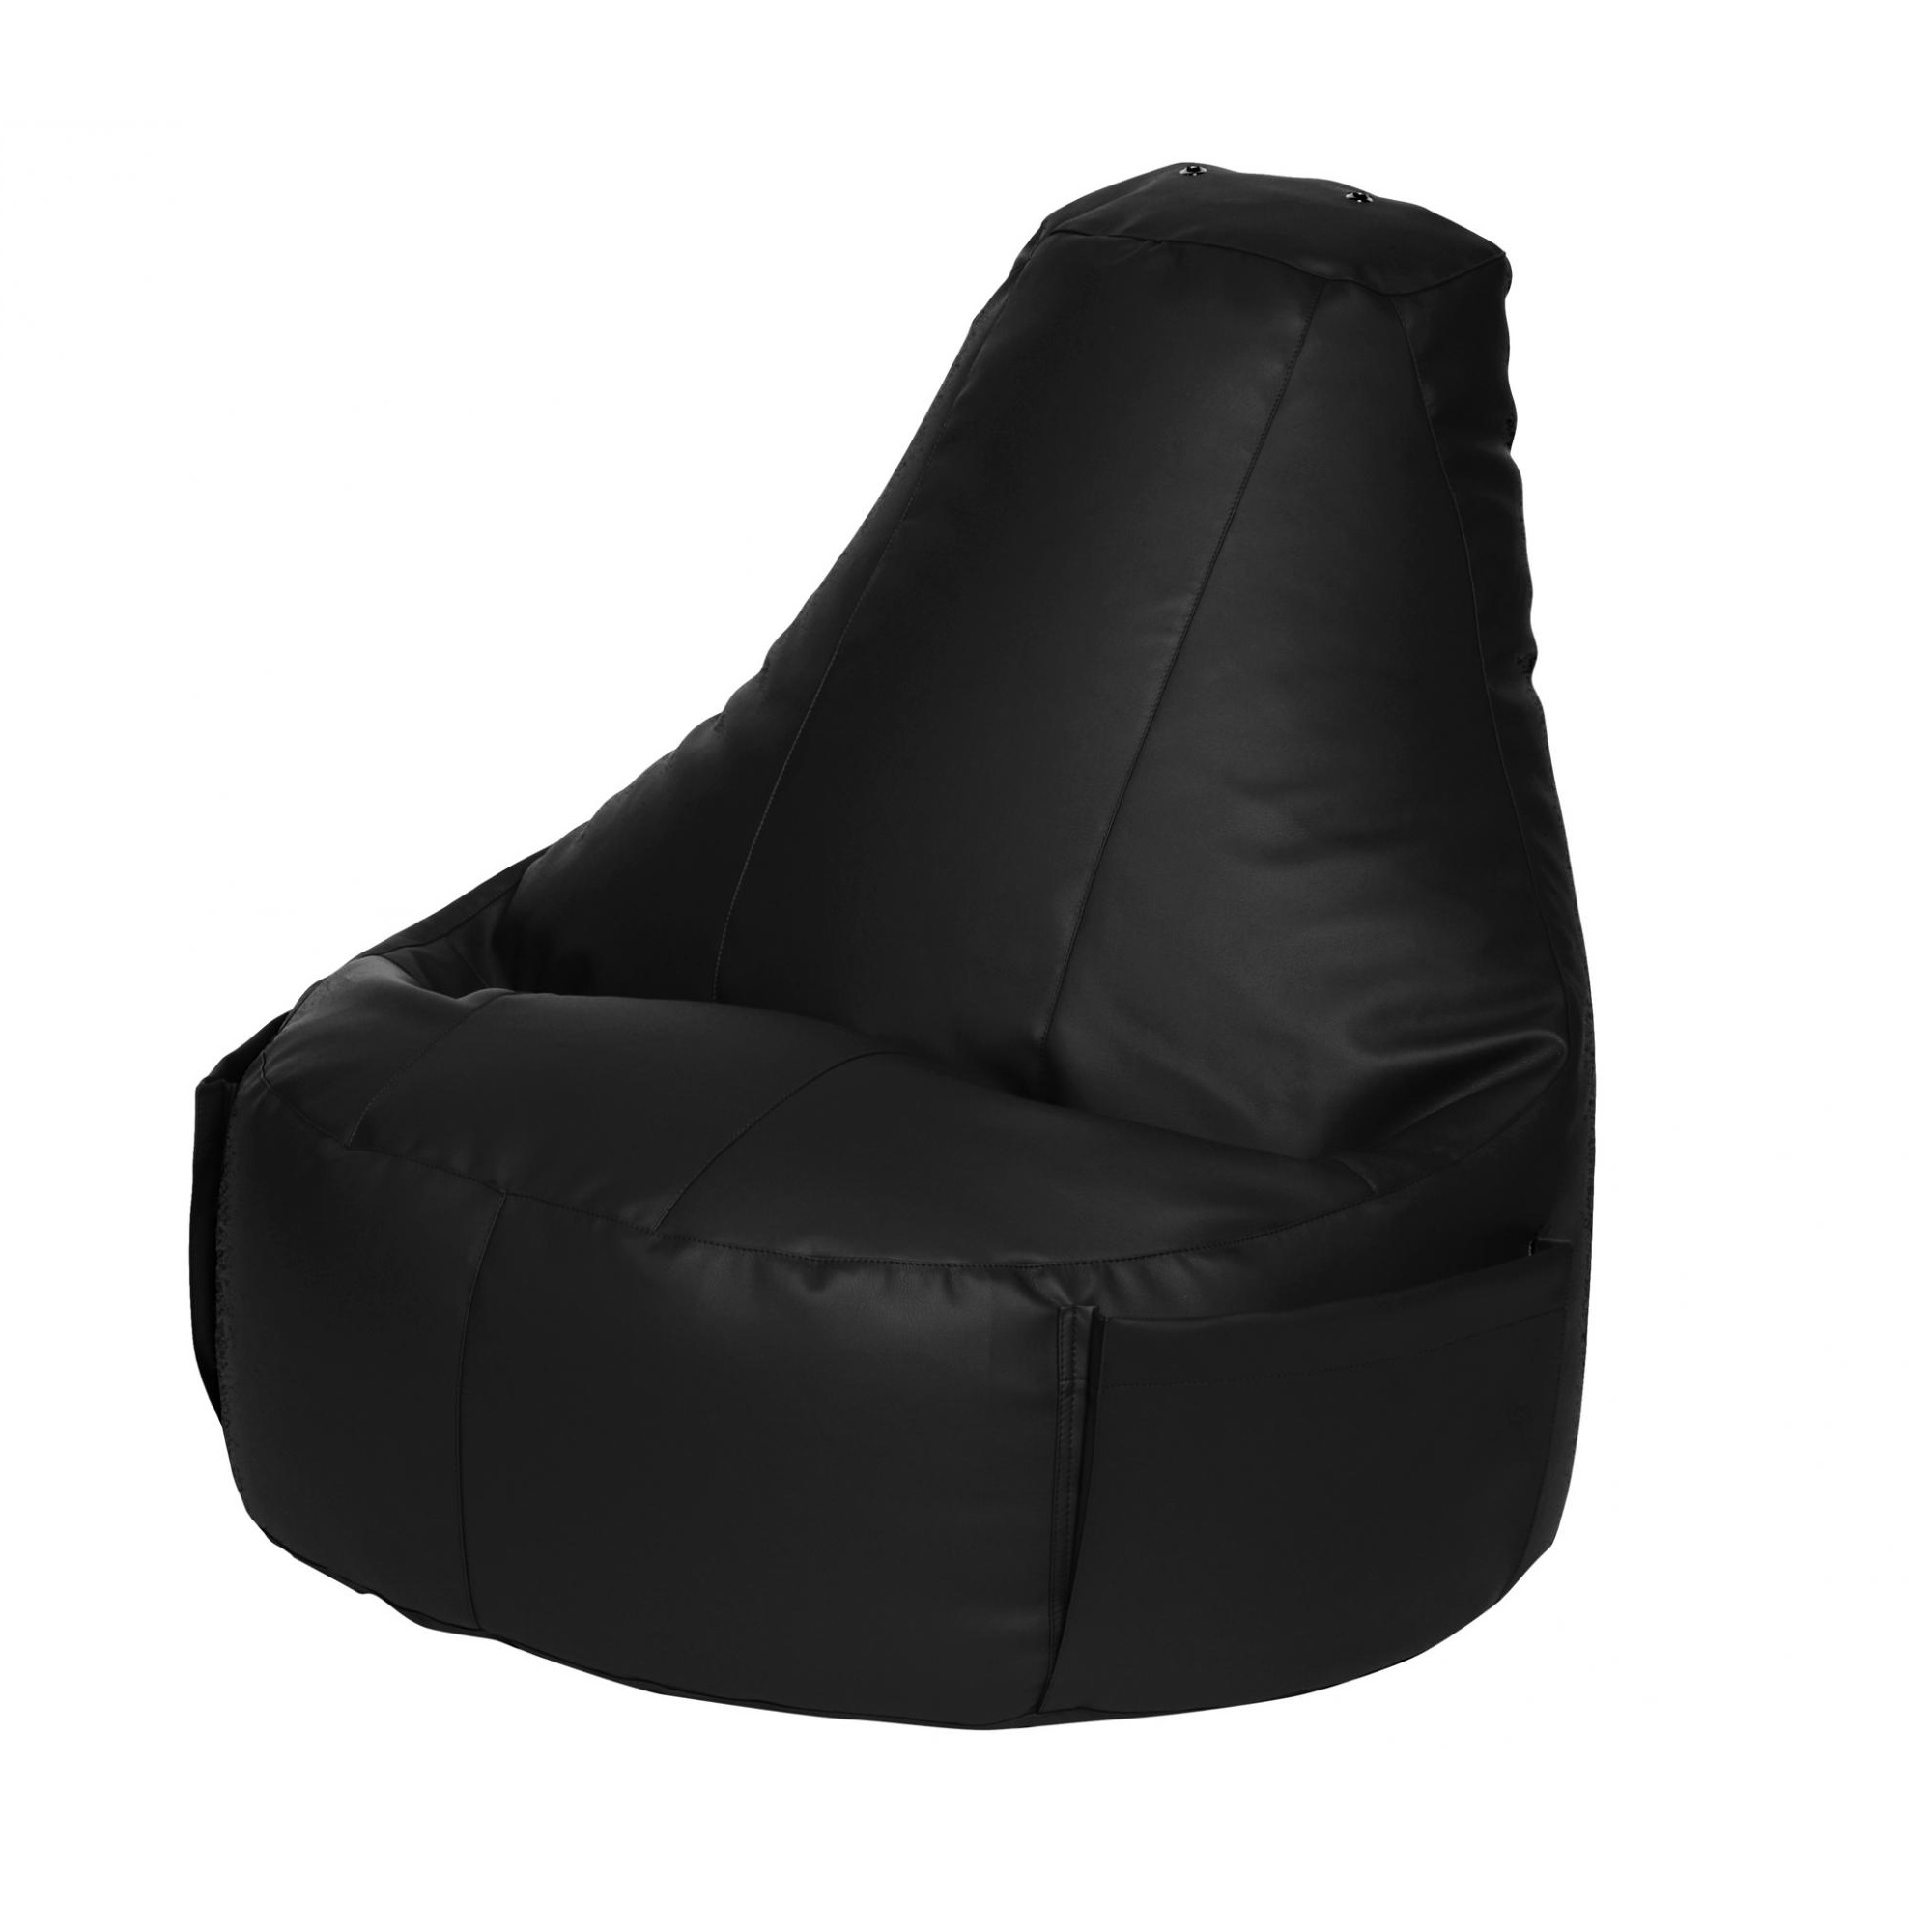 Кресло Dreambag Comfort чёрный экокожа 150x90 см кресло dreambag comfort чёрный экокожа 150x90 см